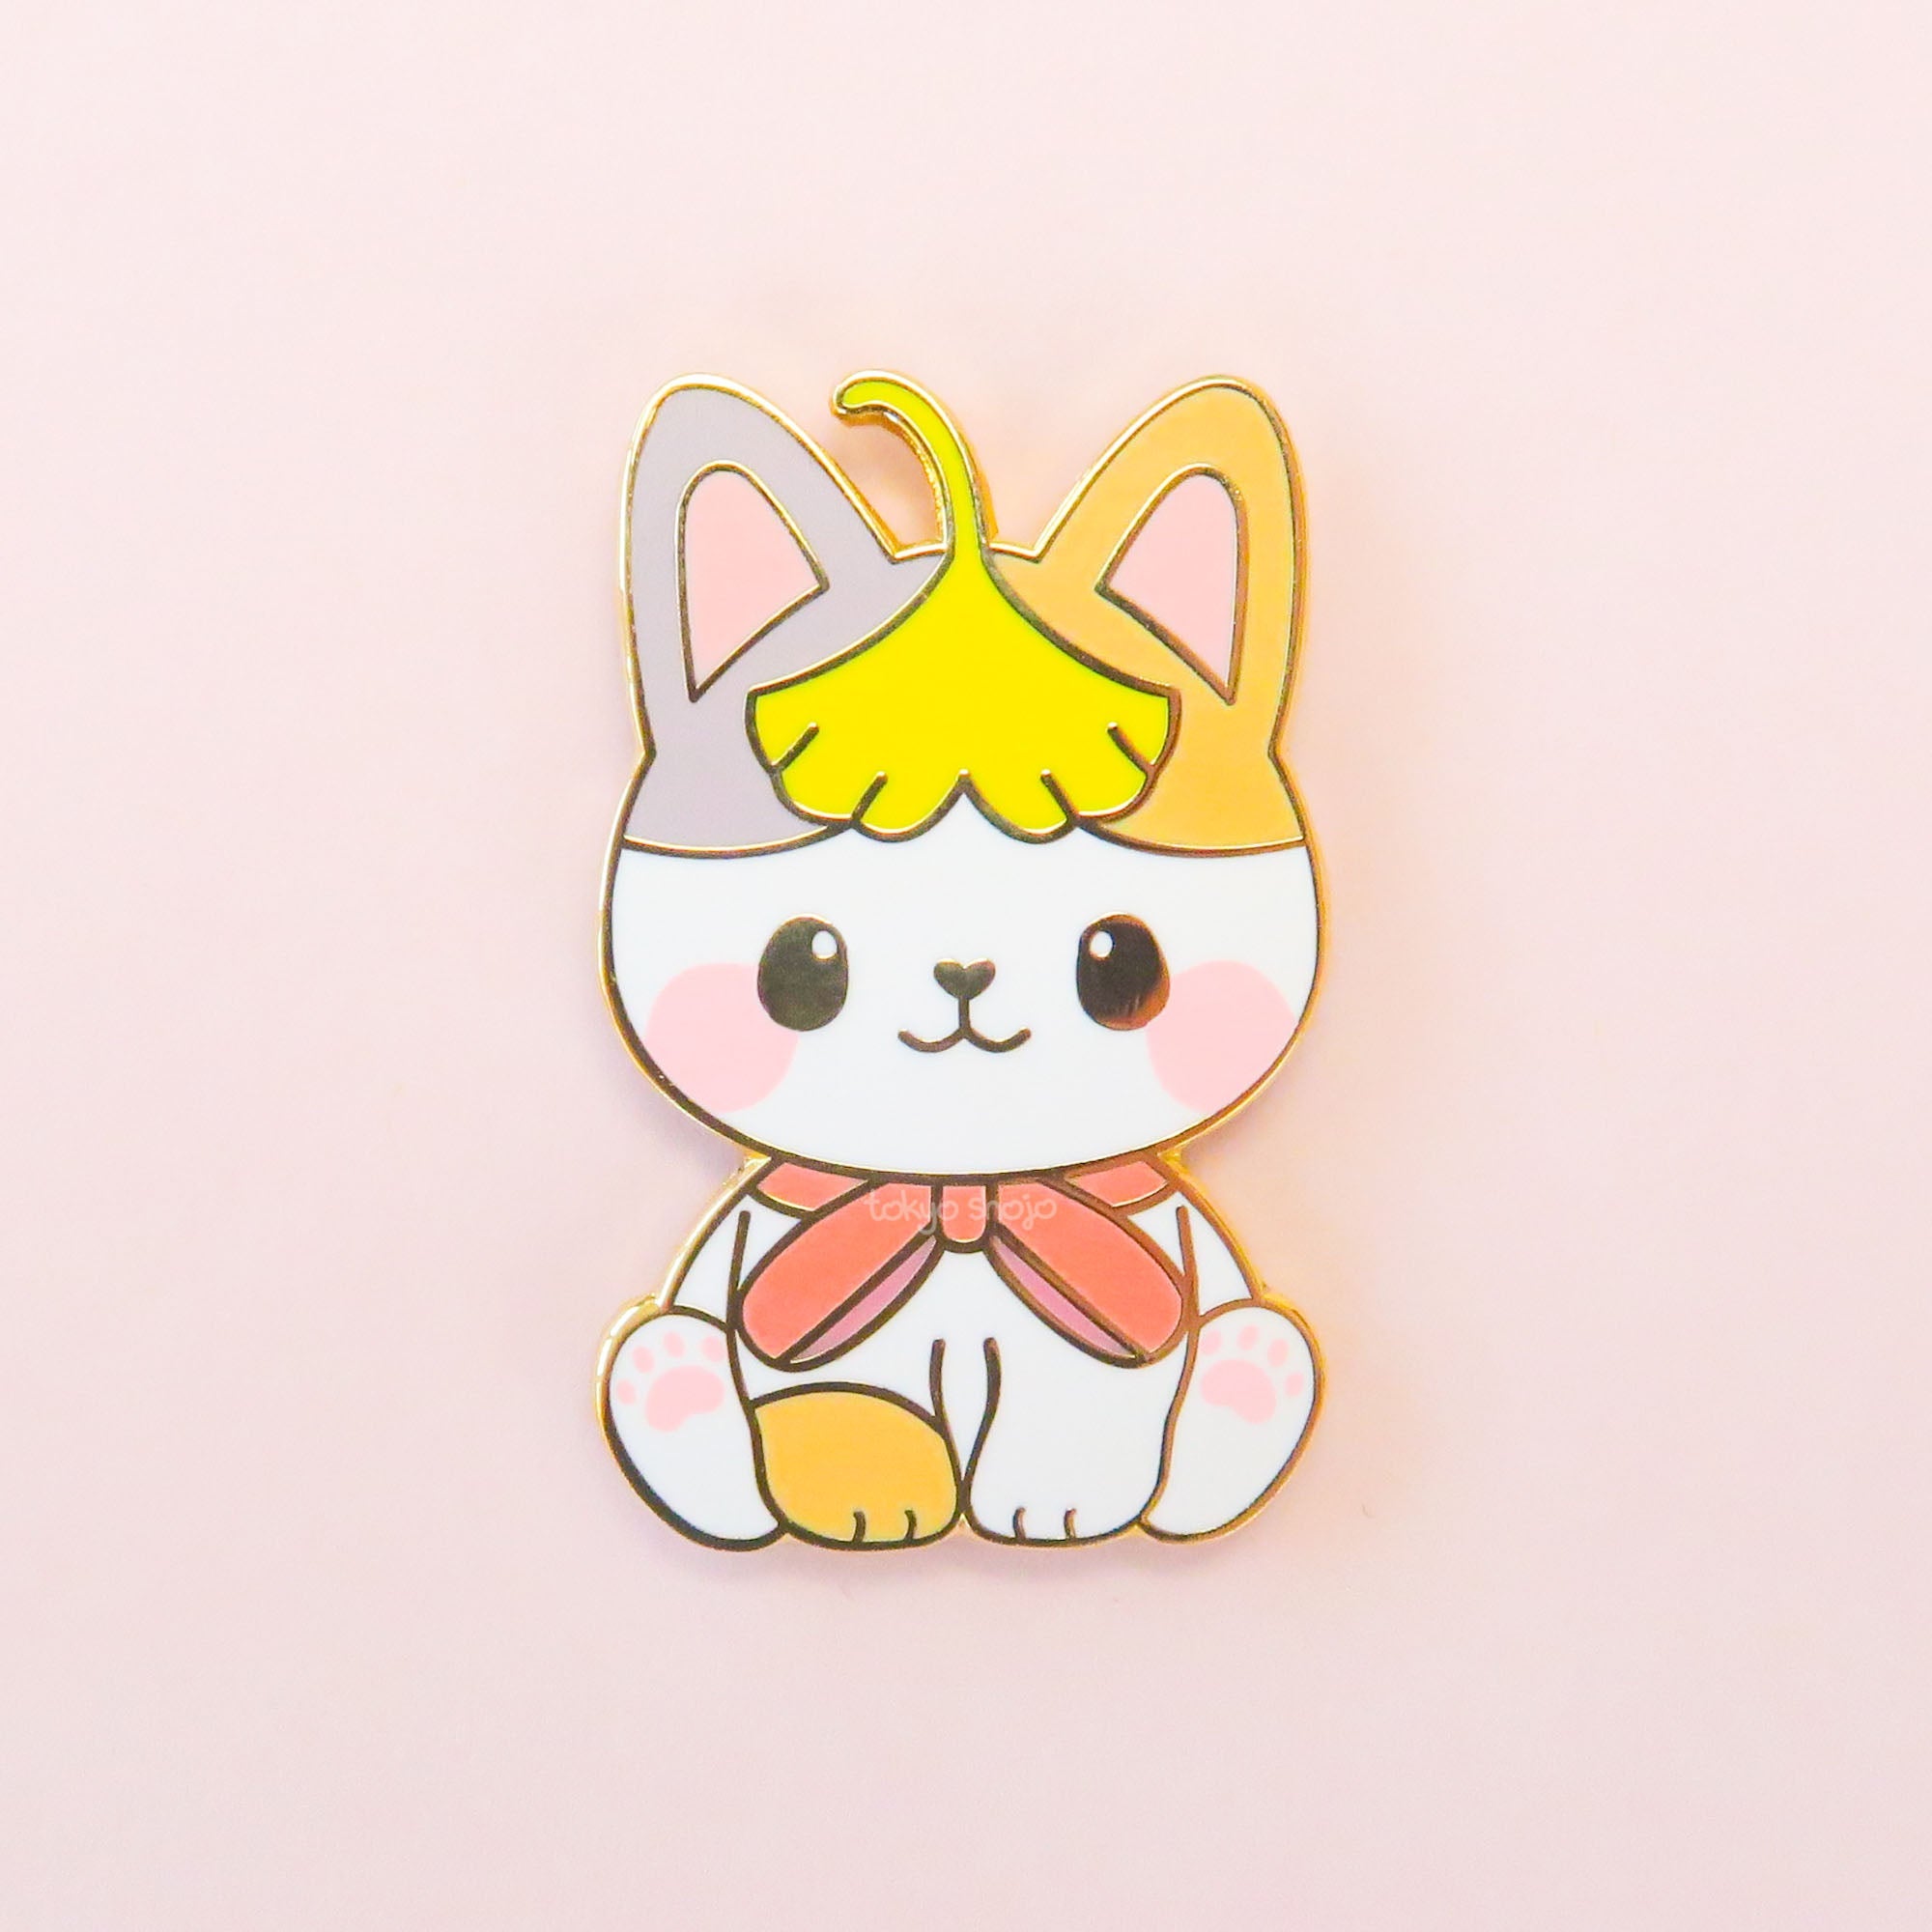 [Tokyo Shojo] Koyo the Cat Pin